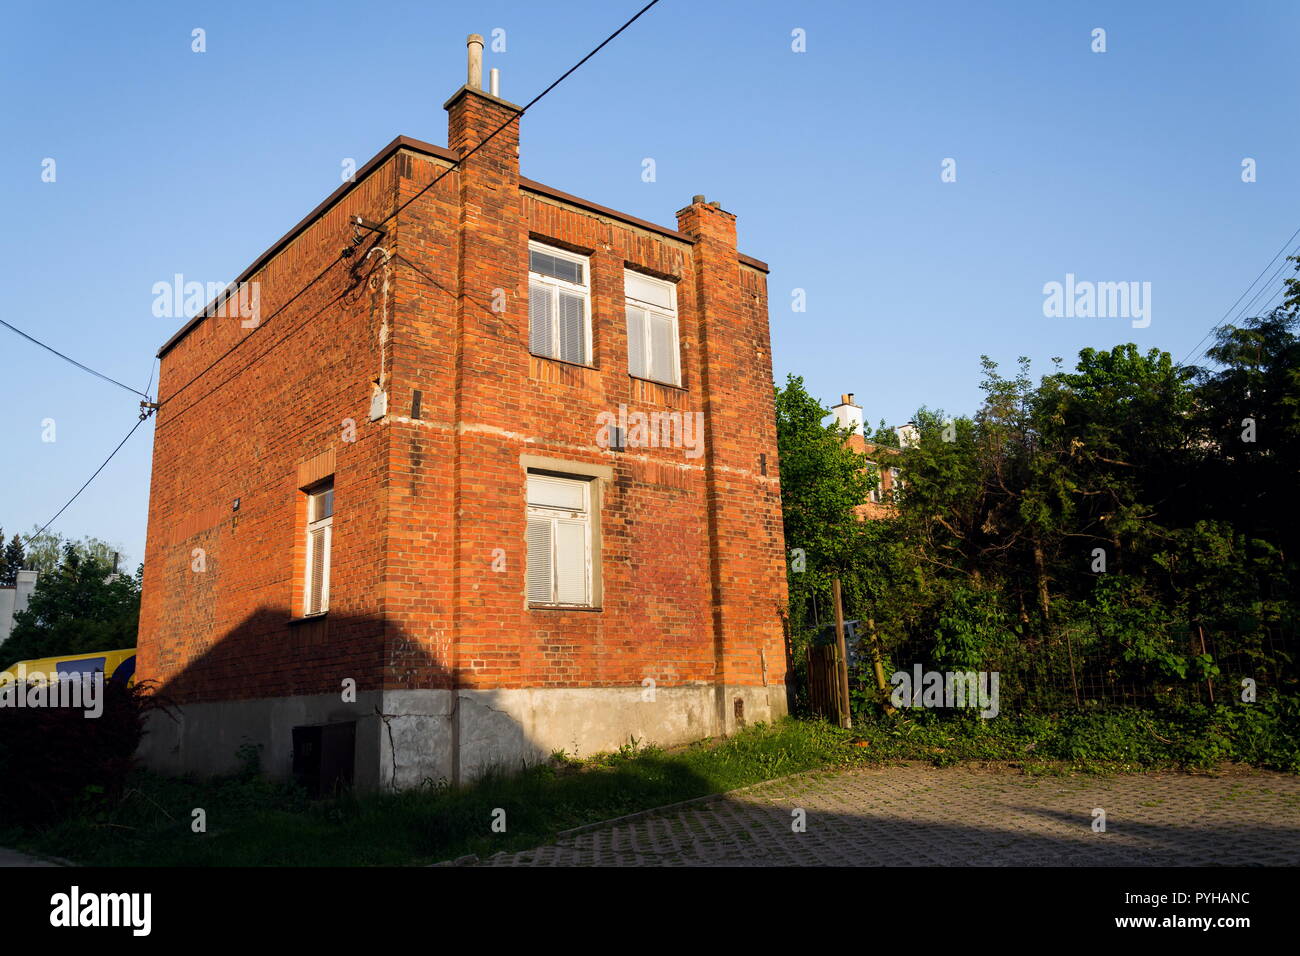 En brique rouge typique des maisons de la famille Bata à Zlin, en Moravie, en République tchèque, journée ensoleillée Banque D'Images